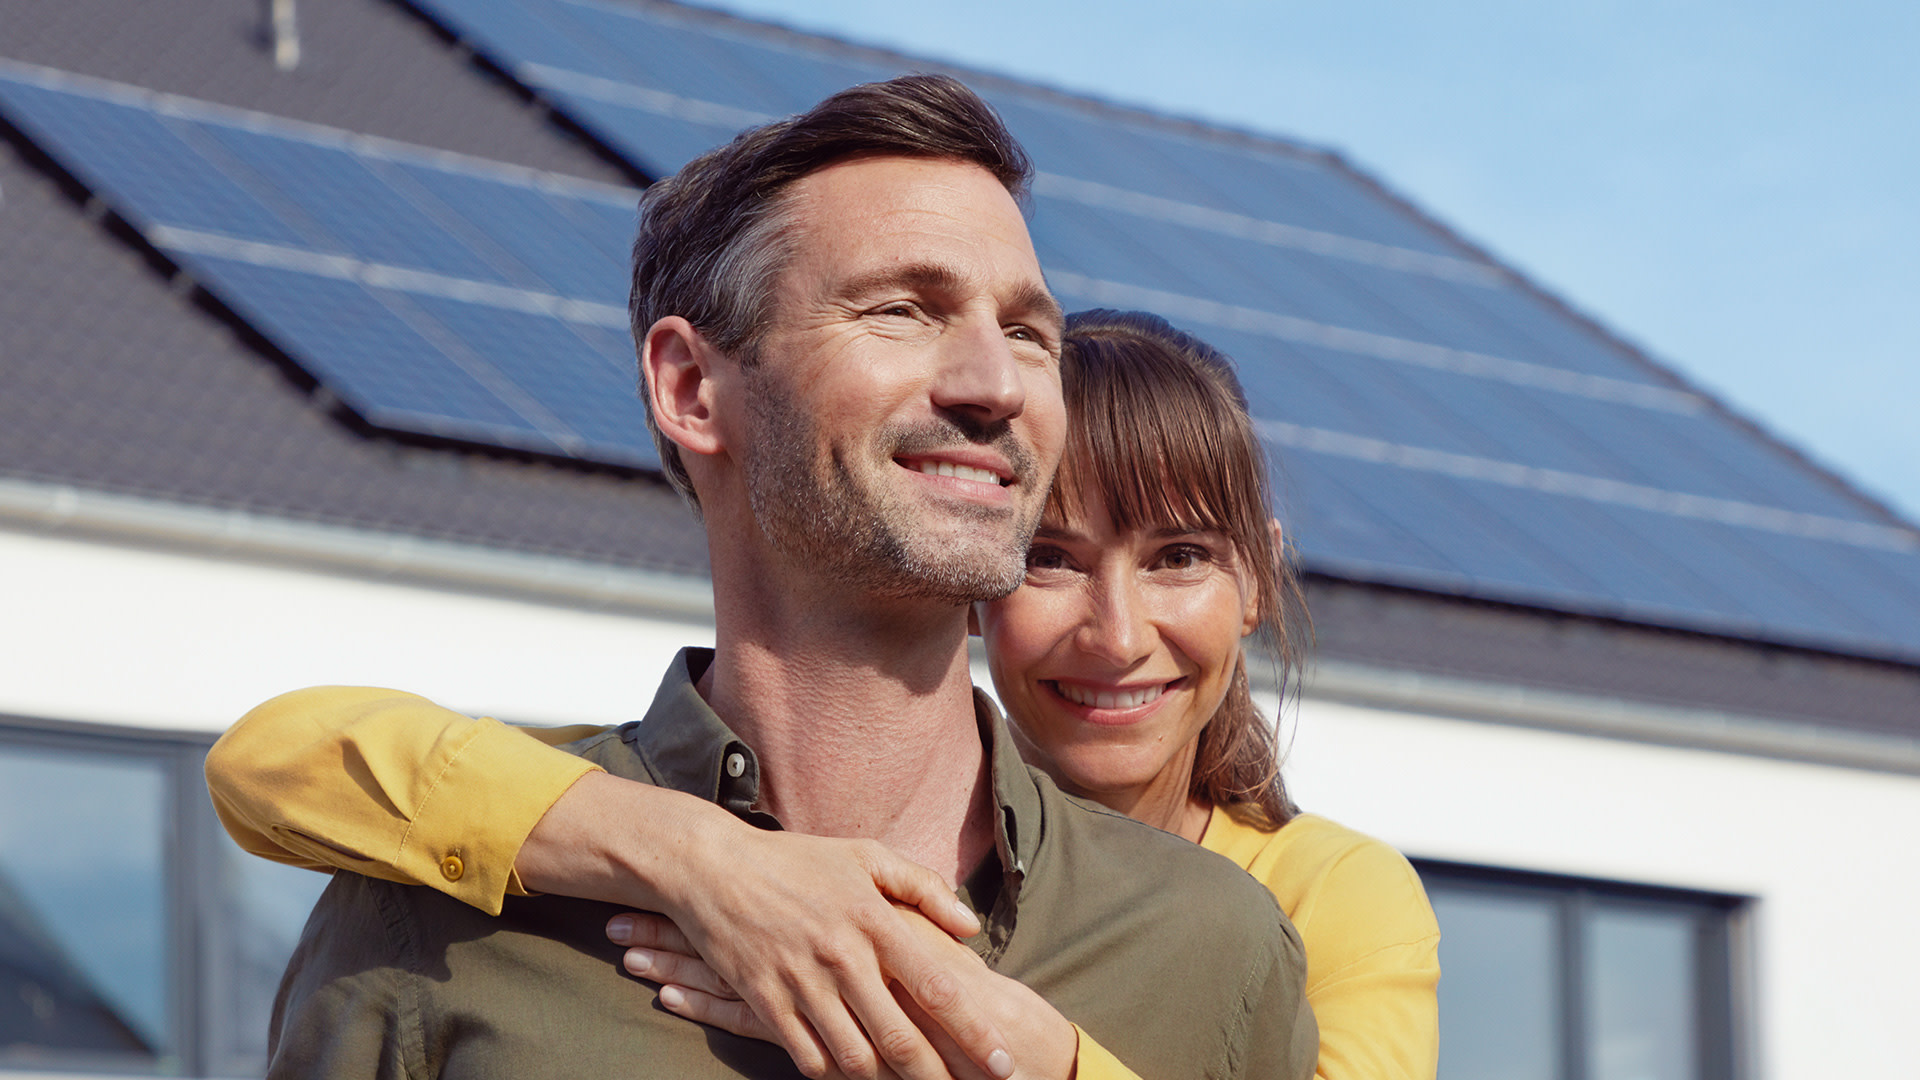 EnBW Kunde Daniel mit seiner Frau, im Hintergrund sein Haus mit EnBW solar+ Solaranlage